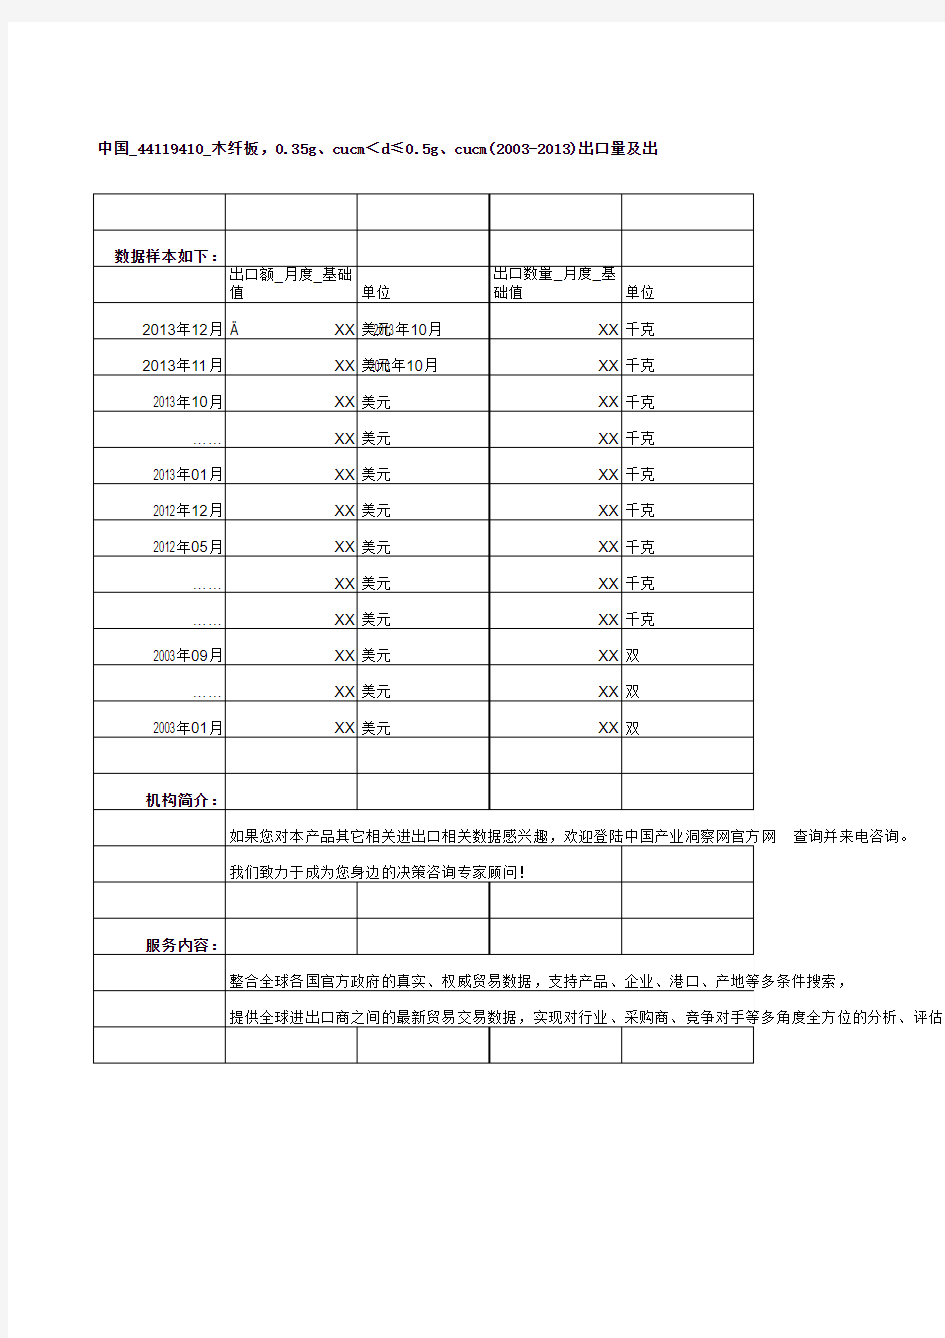 中国_44119410_木纤板,0.35g、cucm＜d≤0.5g、cucm(2003-2013)出口量及出口额